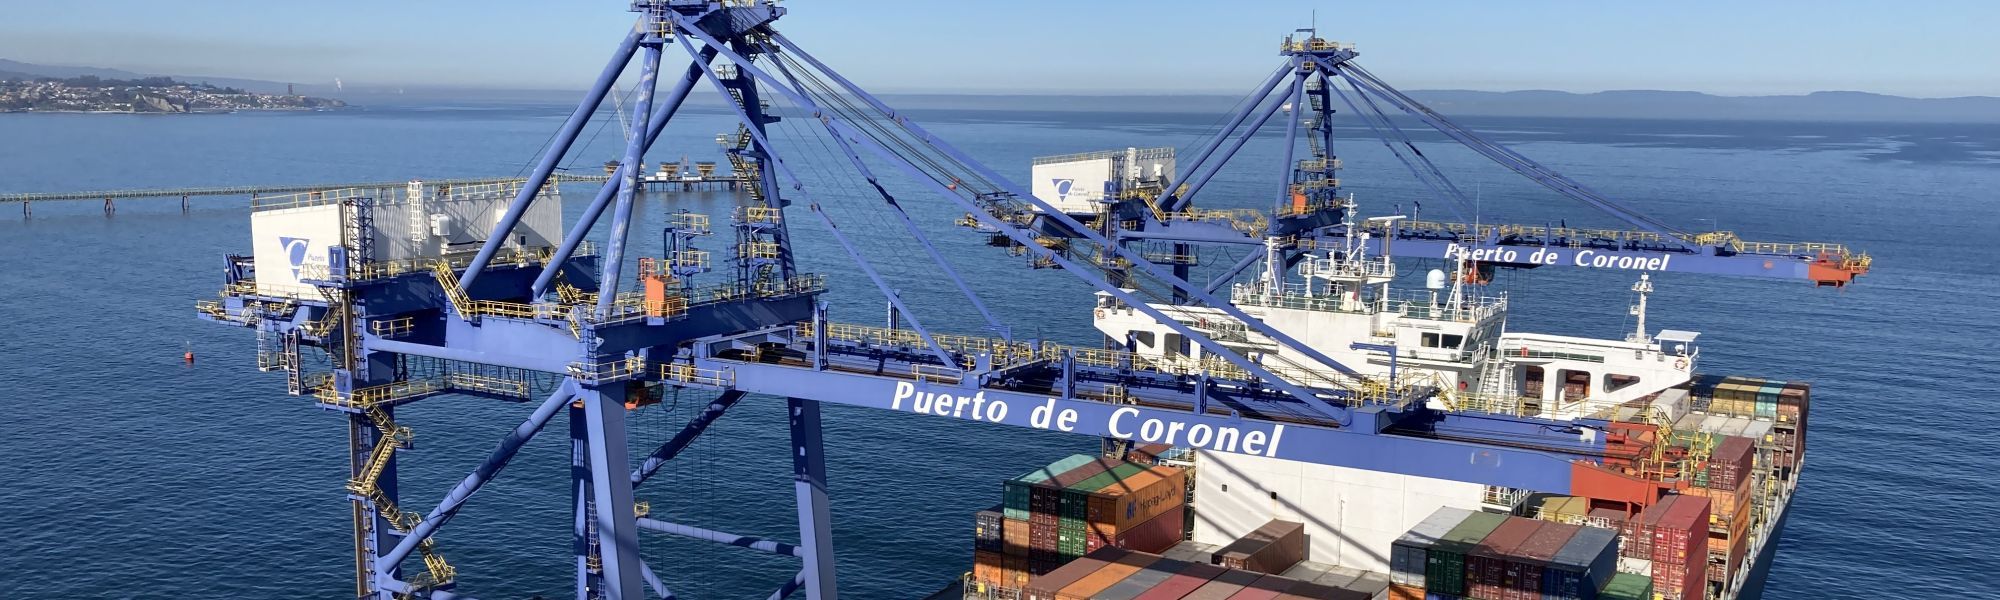 Puerto Coronel Terminal Excellence Check Analysis